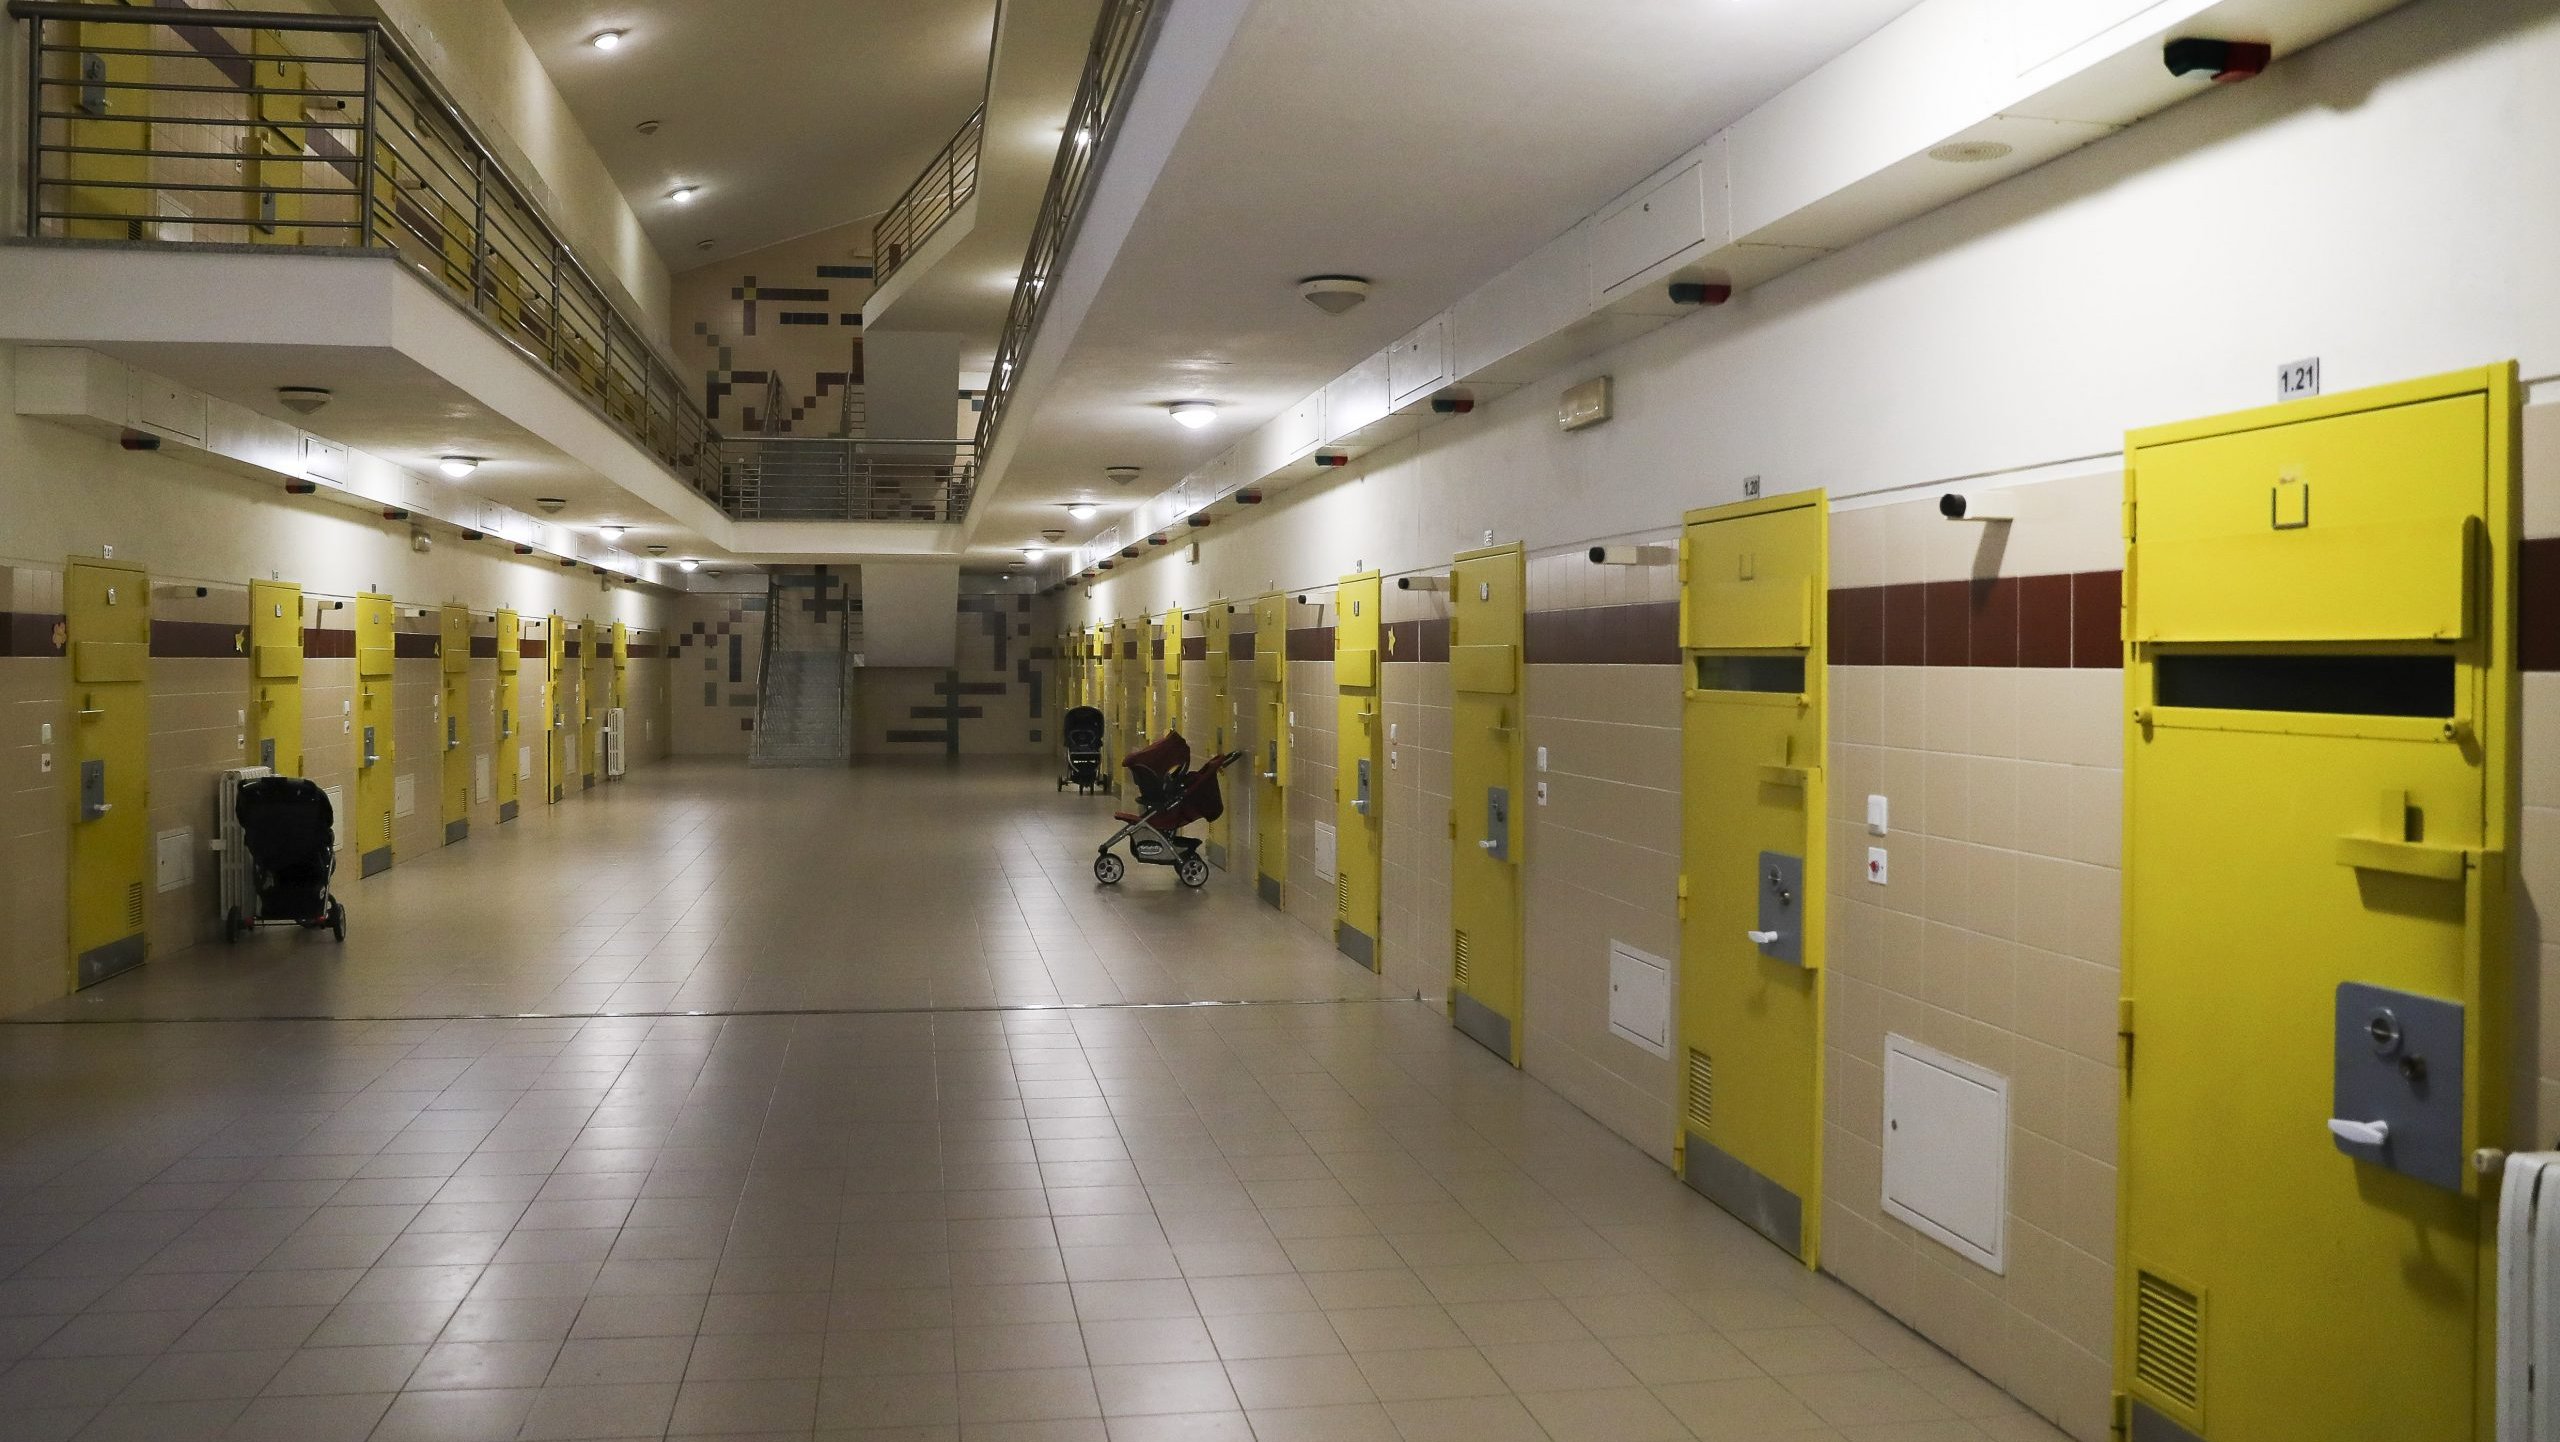 Estabelecimento prisional feminino de Santa Cruz do Bispoo, Matosinhos, 31 de janeiro de 2019. JOSÉ COELHO/LUSA